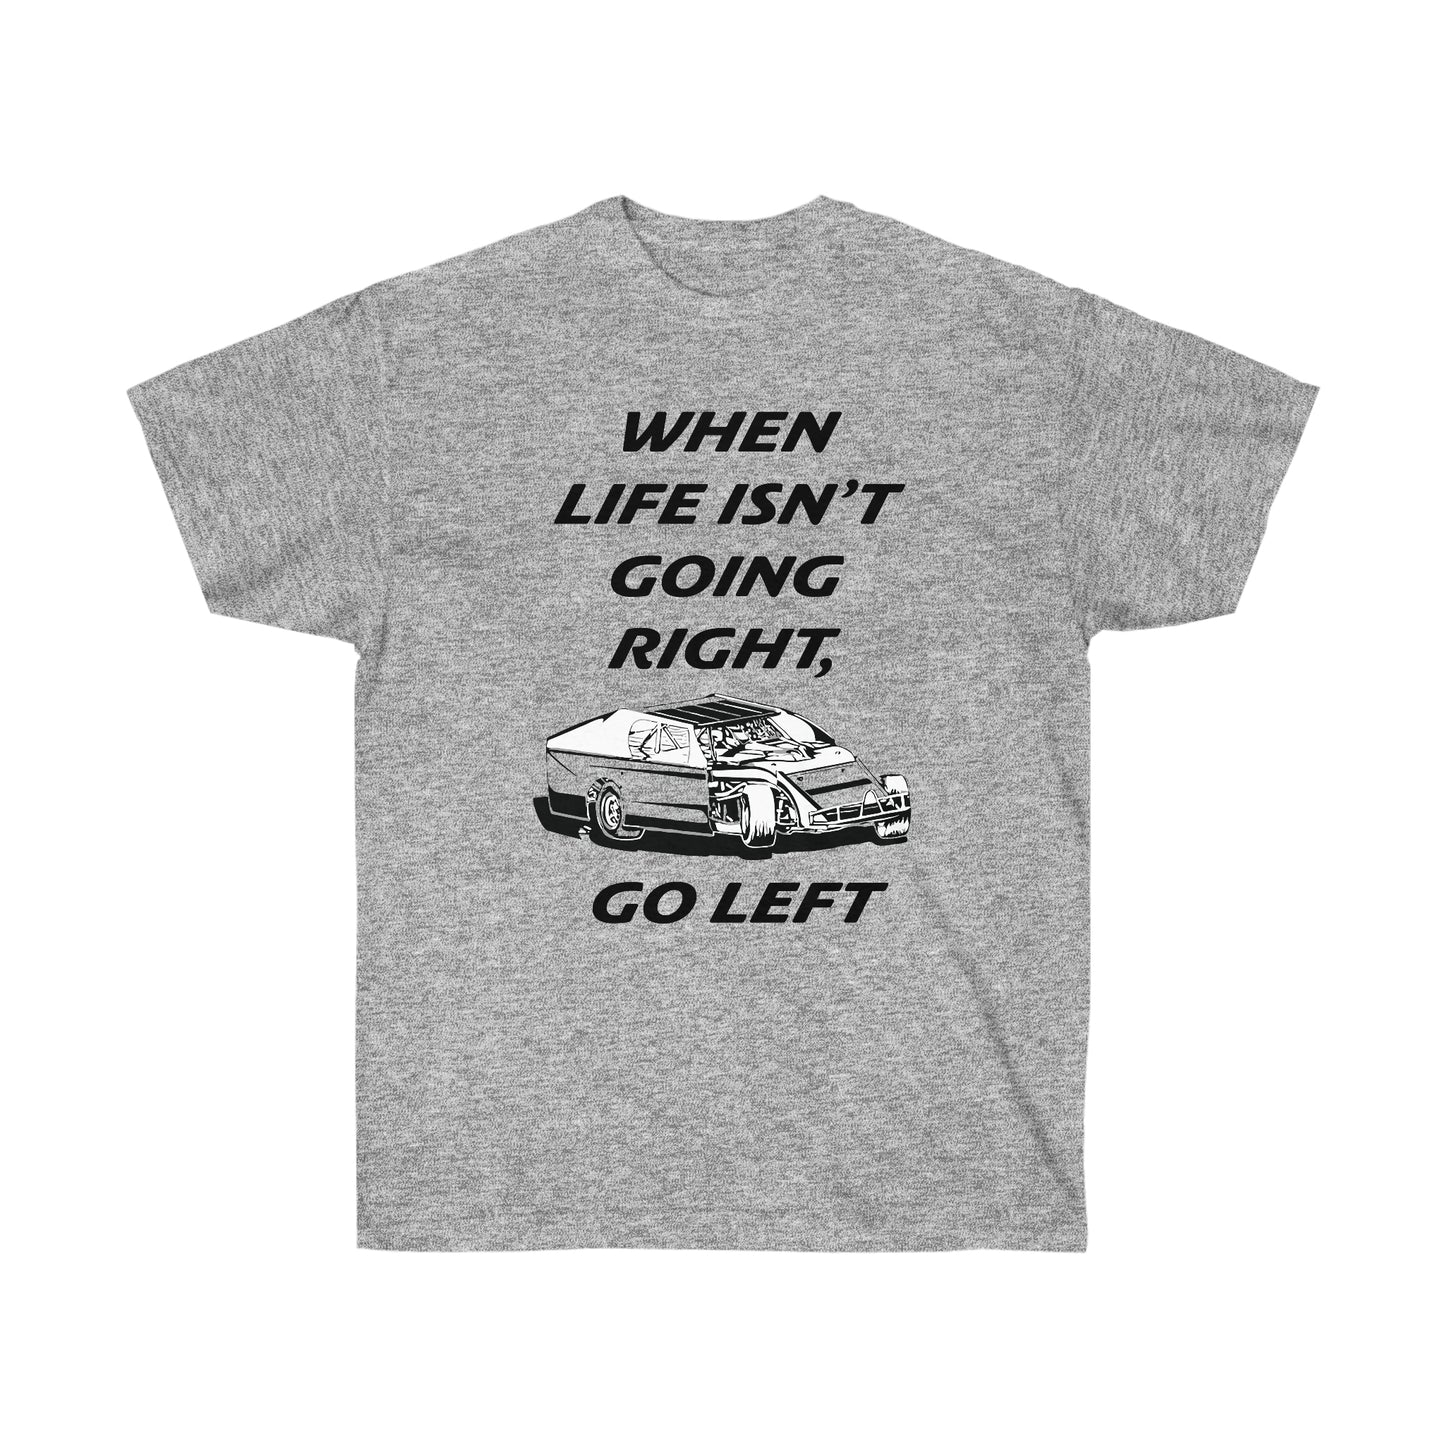 Go Left- Modified Car